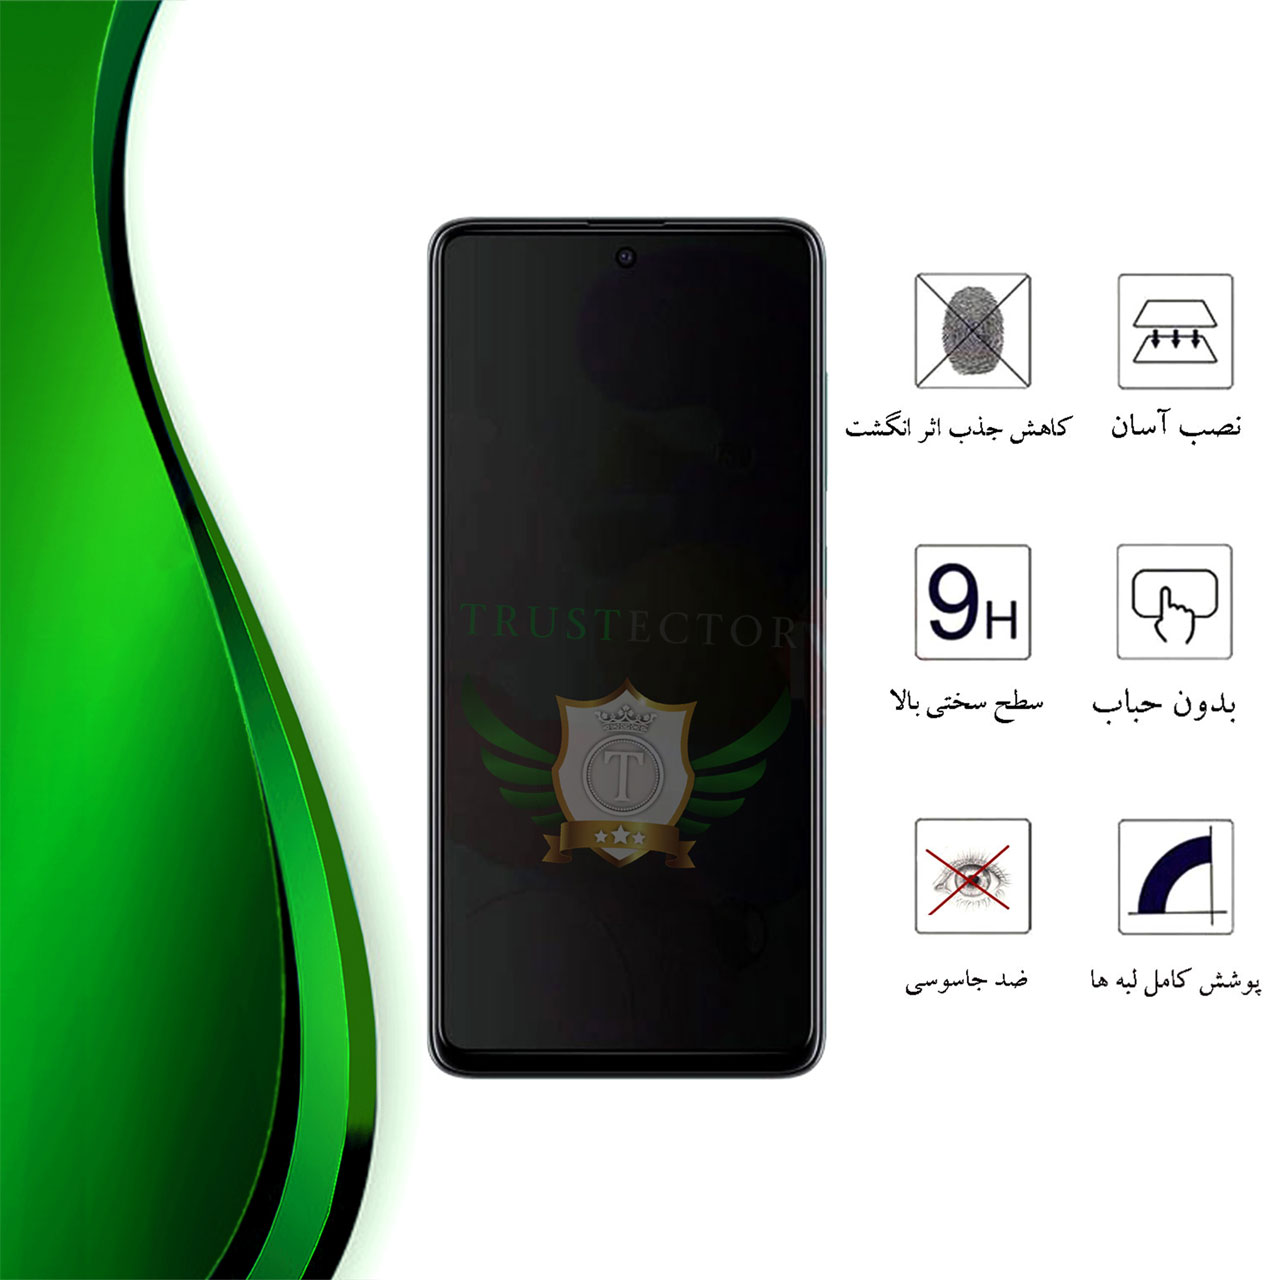  محافظ صفحه نمایش سرامیکی حریم شخصی تراستکتور مدل PRIVATECRT مناسب برای گوشی موبایل سامسونگ Galaxy A70